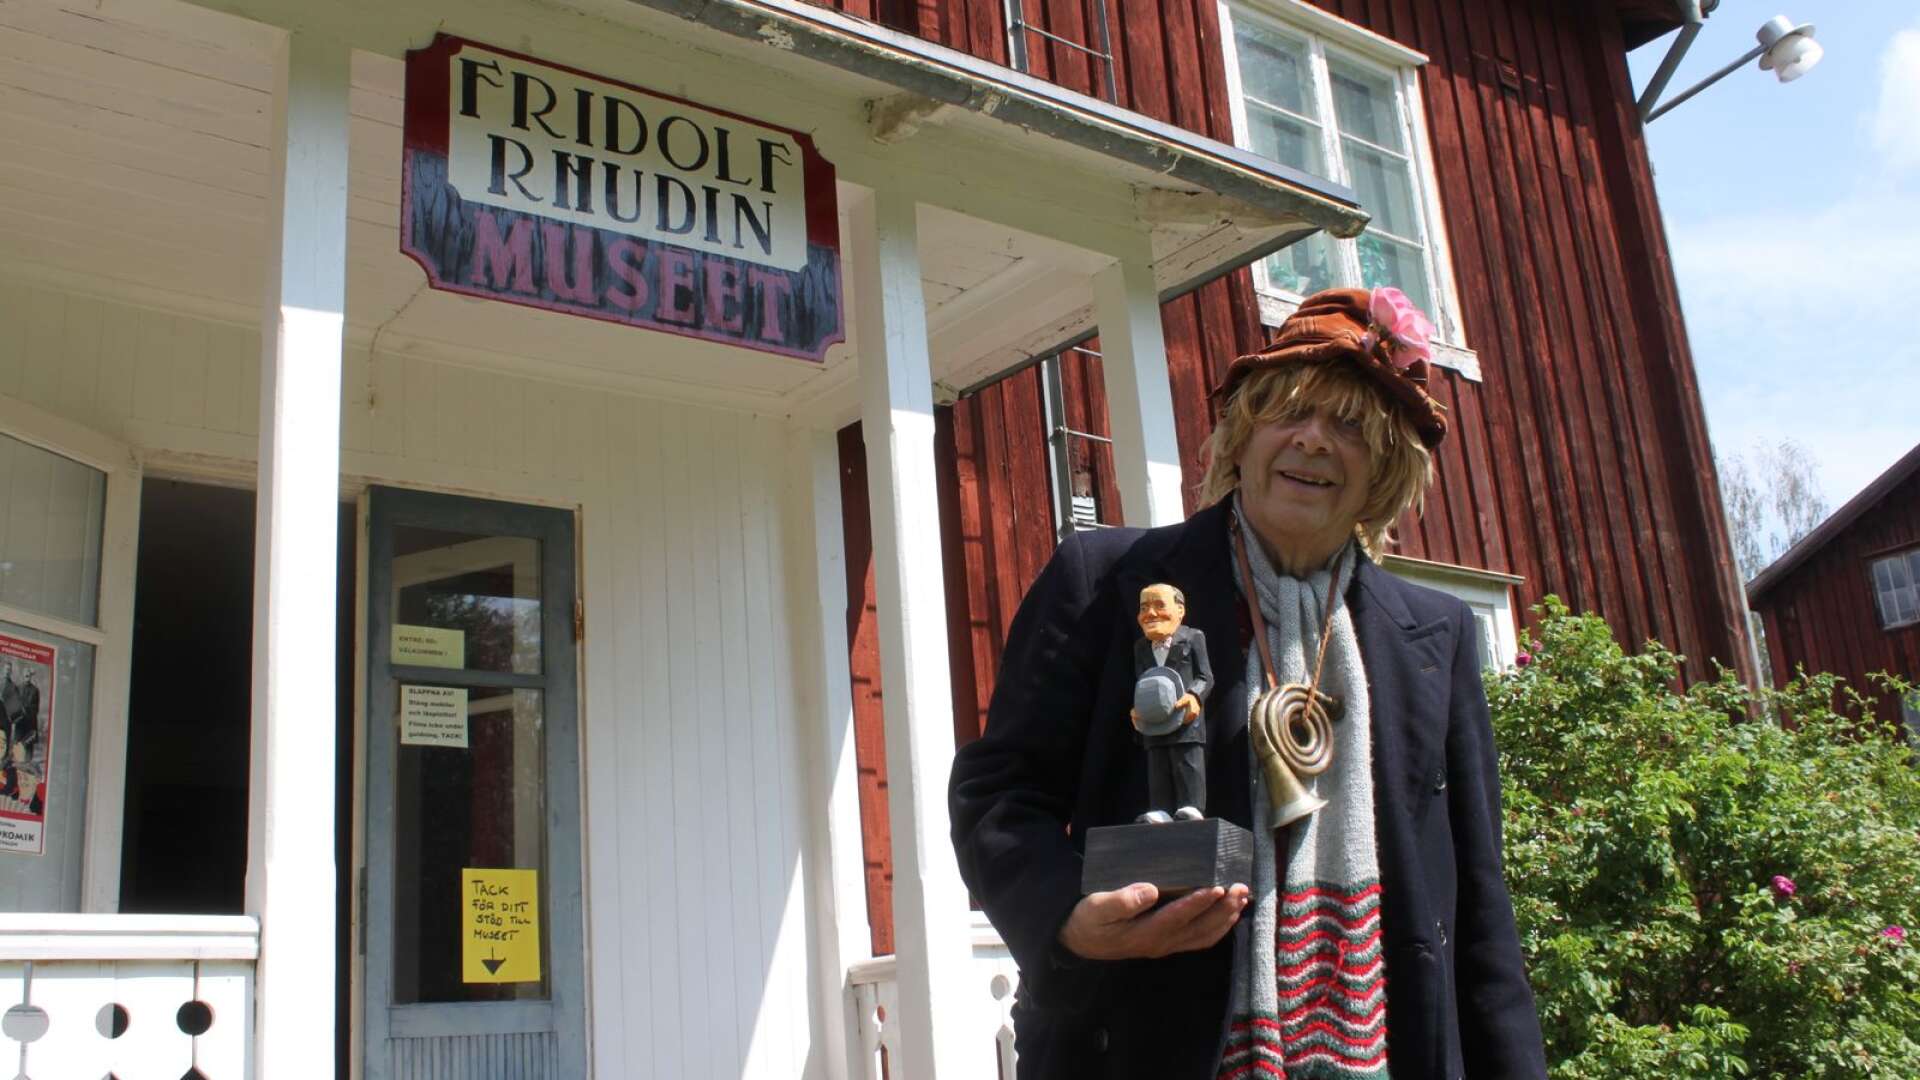 Owe Clapson ansvarar för den Svenska Bondkomikerfestivalen och Fridolf Rhudin-museet. I handen håller han statyetten som delas ut i Fridolf Rhudin-priset.